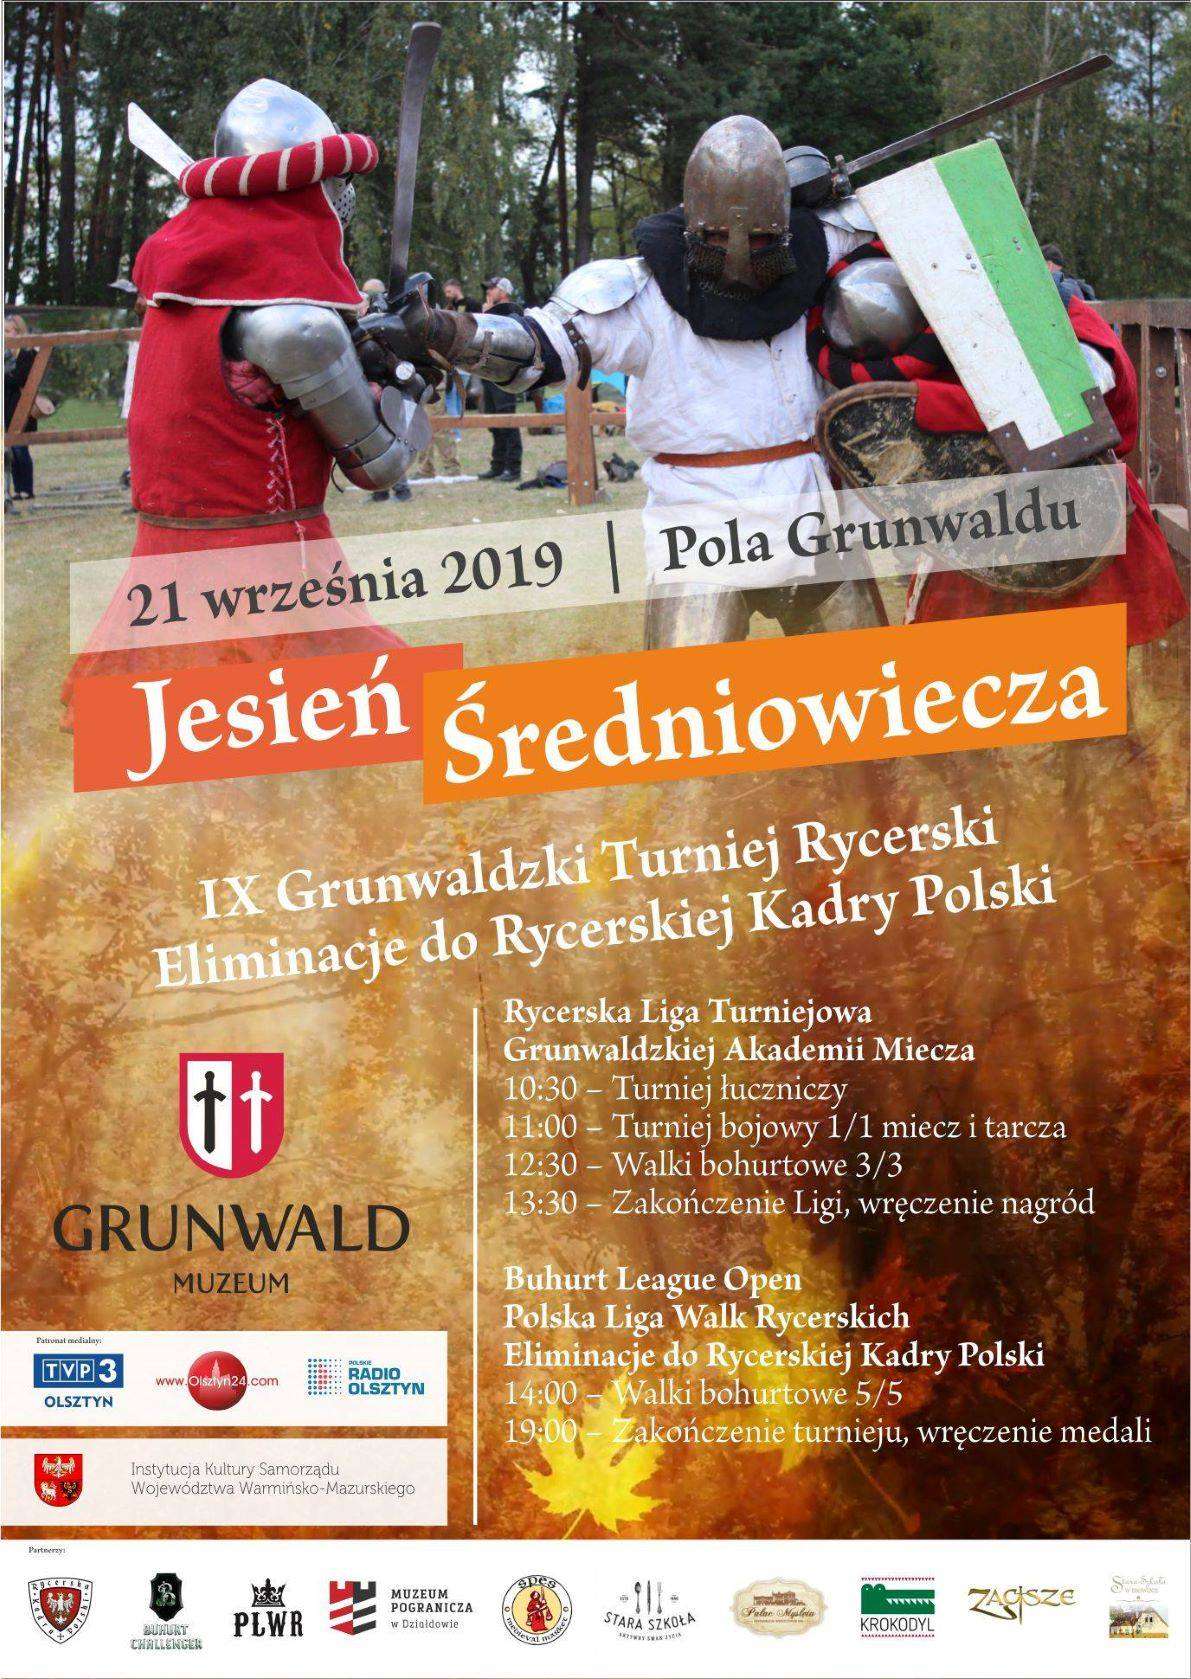 Grunwaldzki Turniej Rycerski „Jesień Średniowiecza” - full image